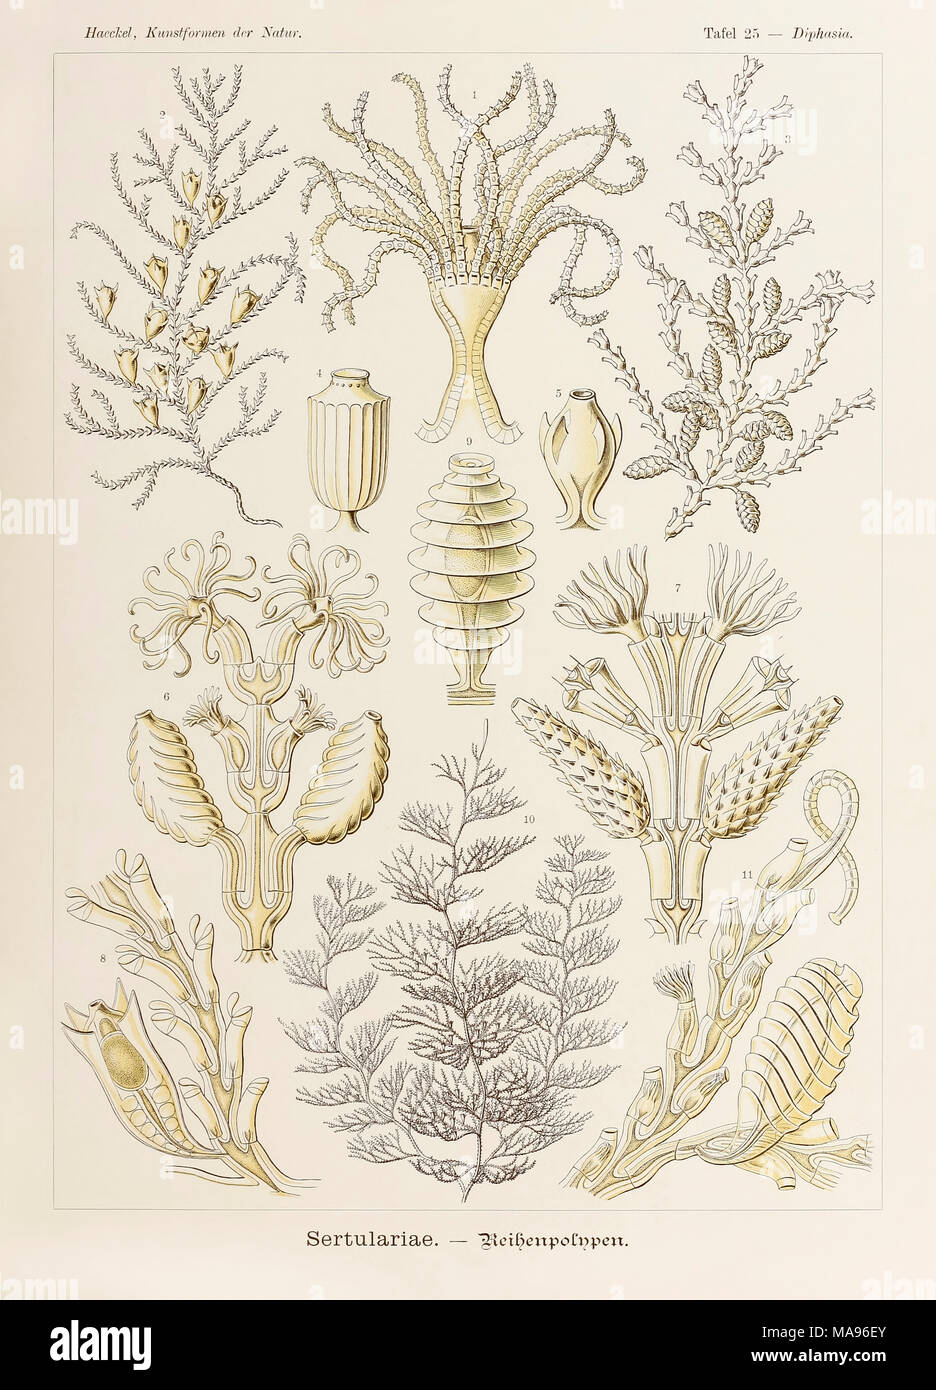 Planche 25 Diphasia Sertulariae Kunstformen der Natur de 'art' (formes de la Nature) illustrée par Ernst Haeckel (1834-1919). Voir plus d'informations ci-dessous. Banque D'Images